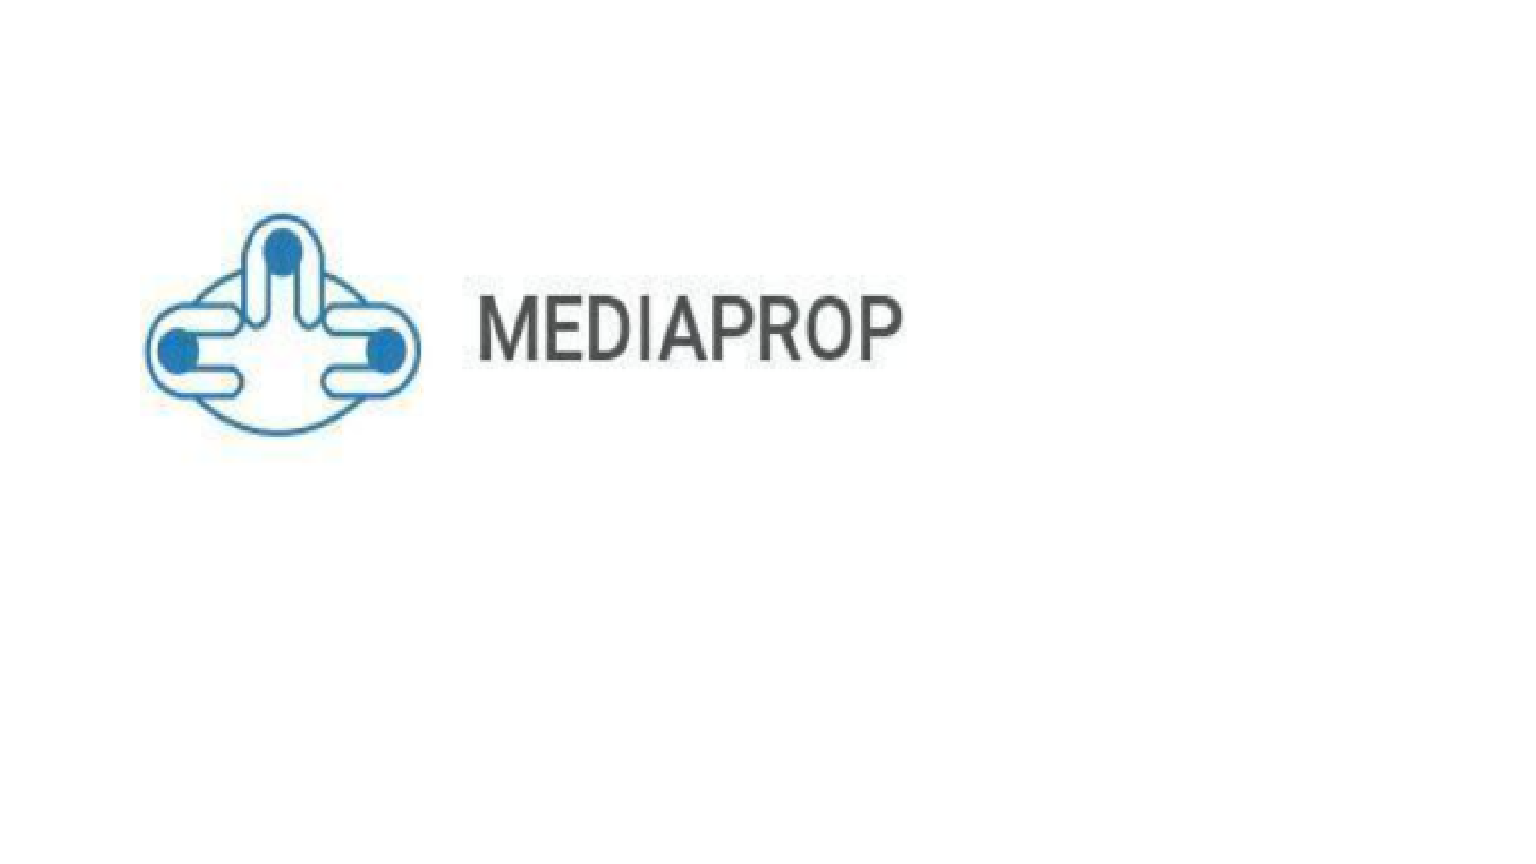 Mediaprop